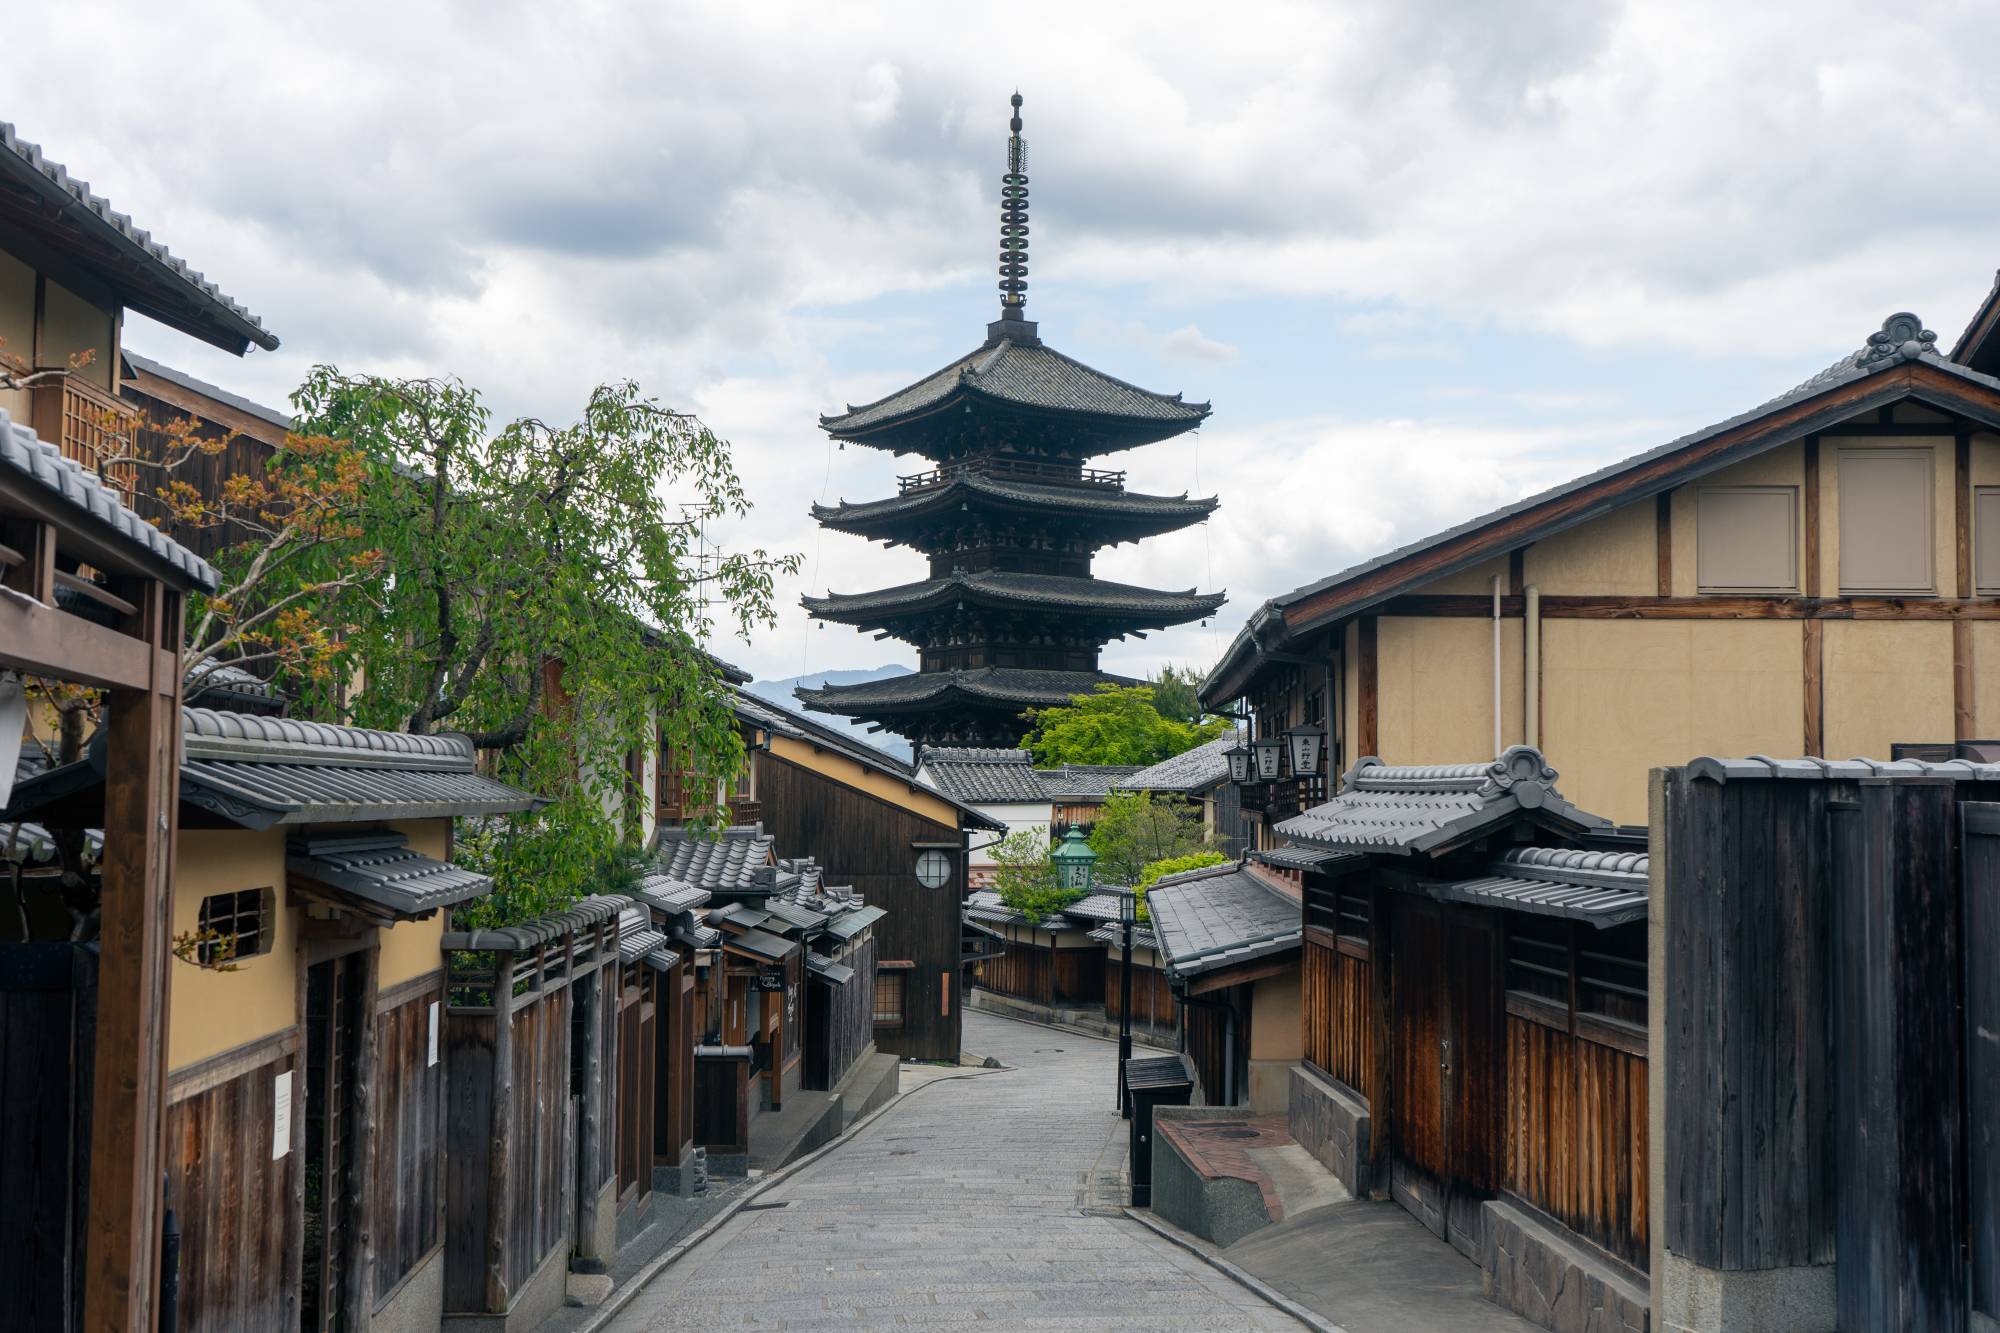 Mê mẩn hình ảnh yên bình của thành phố Kyoto, Nhật Bản những ngày vắng khách du lịch 5